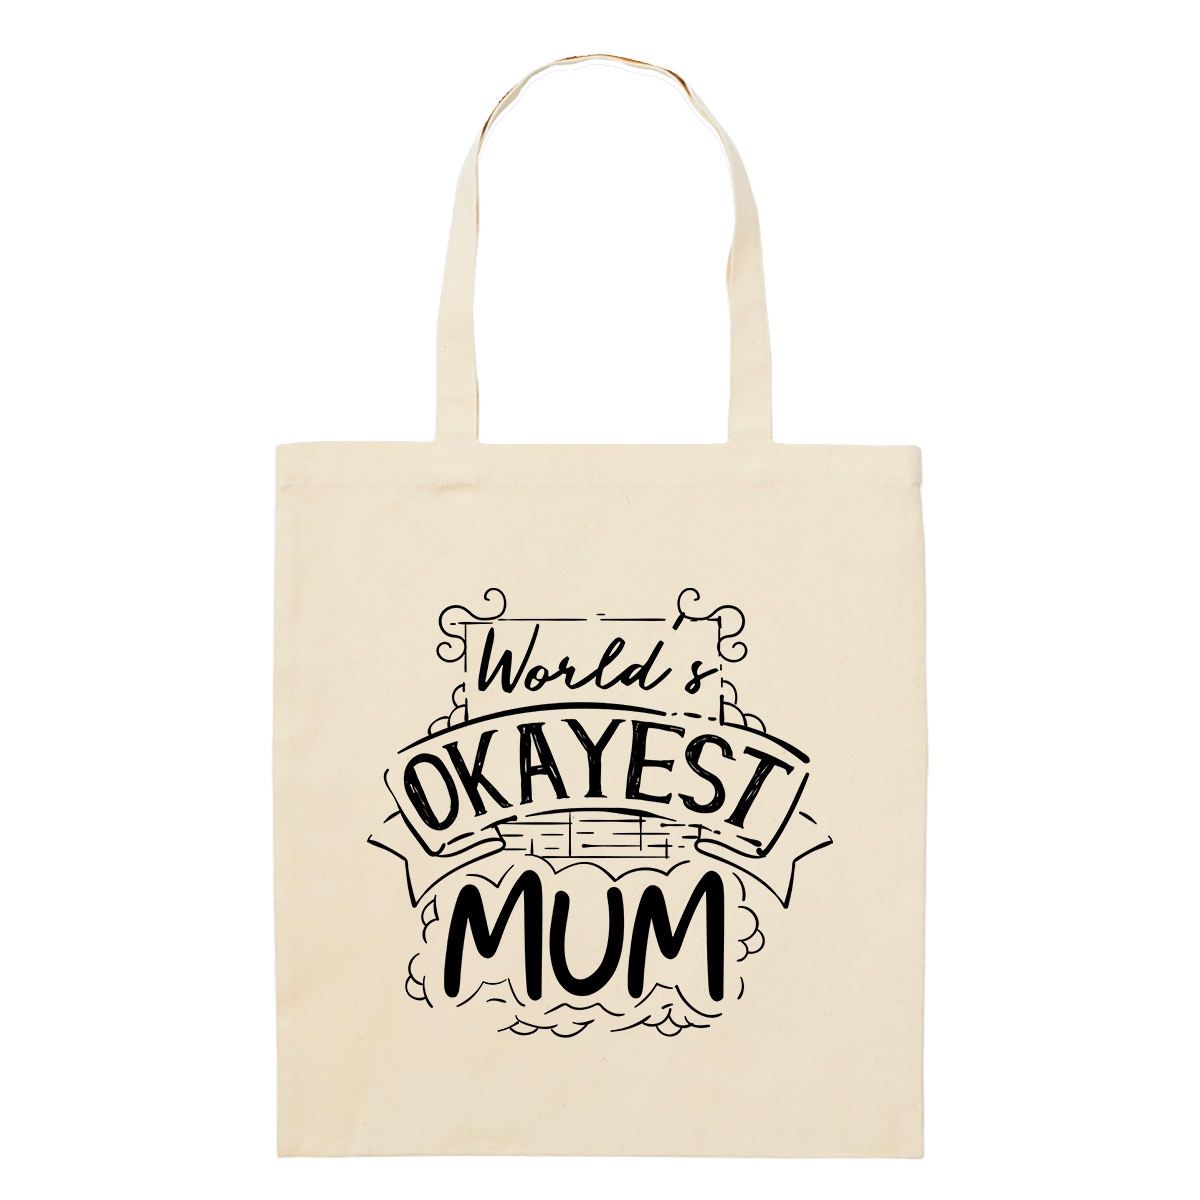 Tote Bag - Regular - Okayest Mum